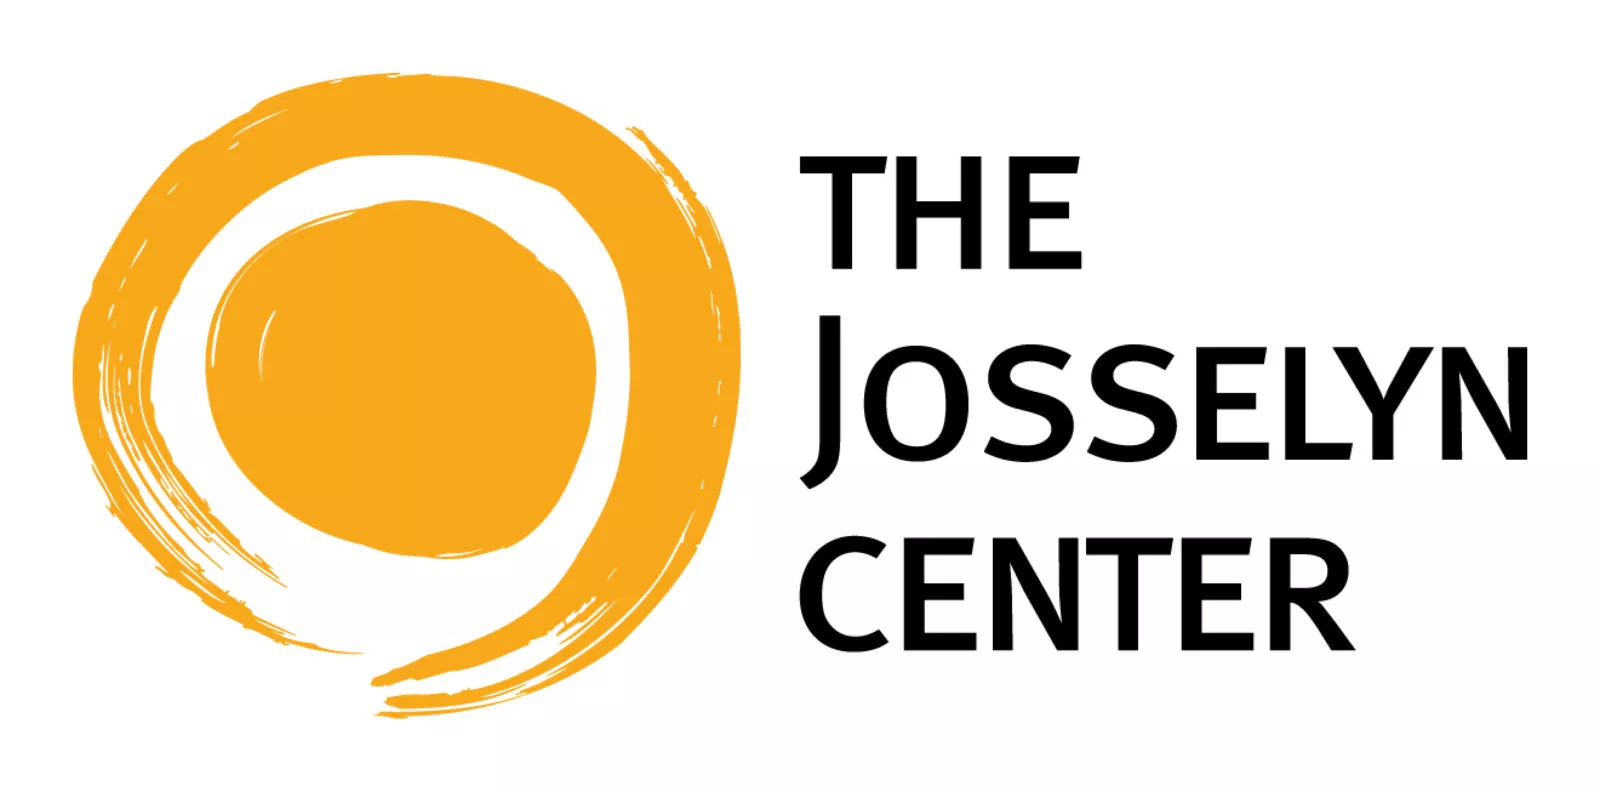 The Josselyn Center